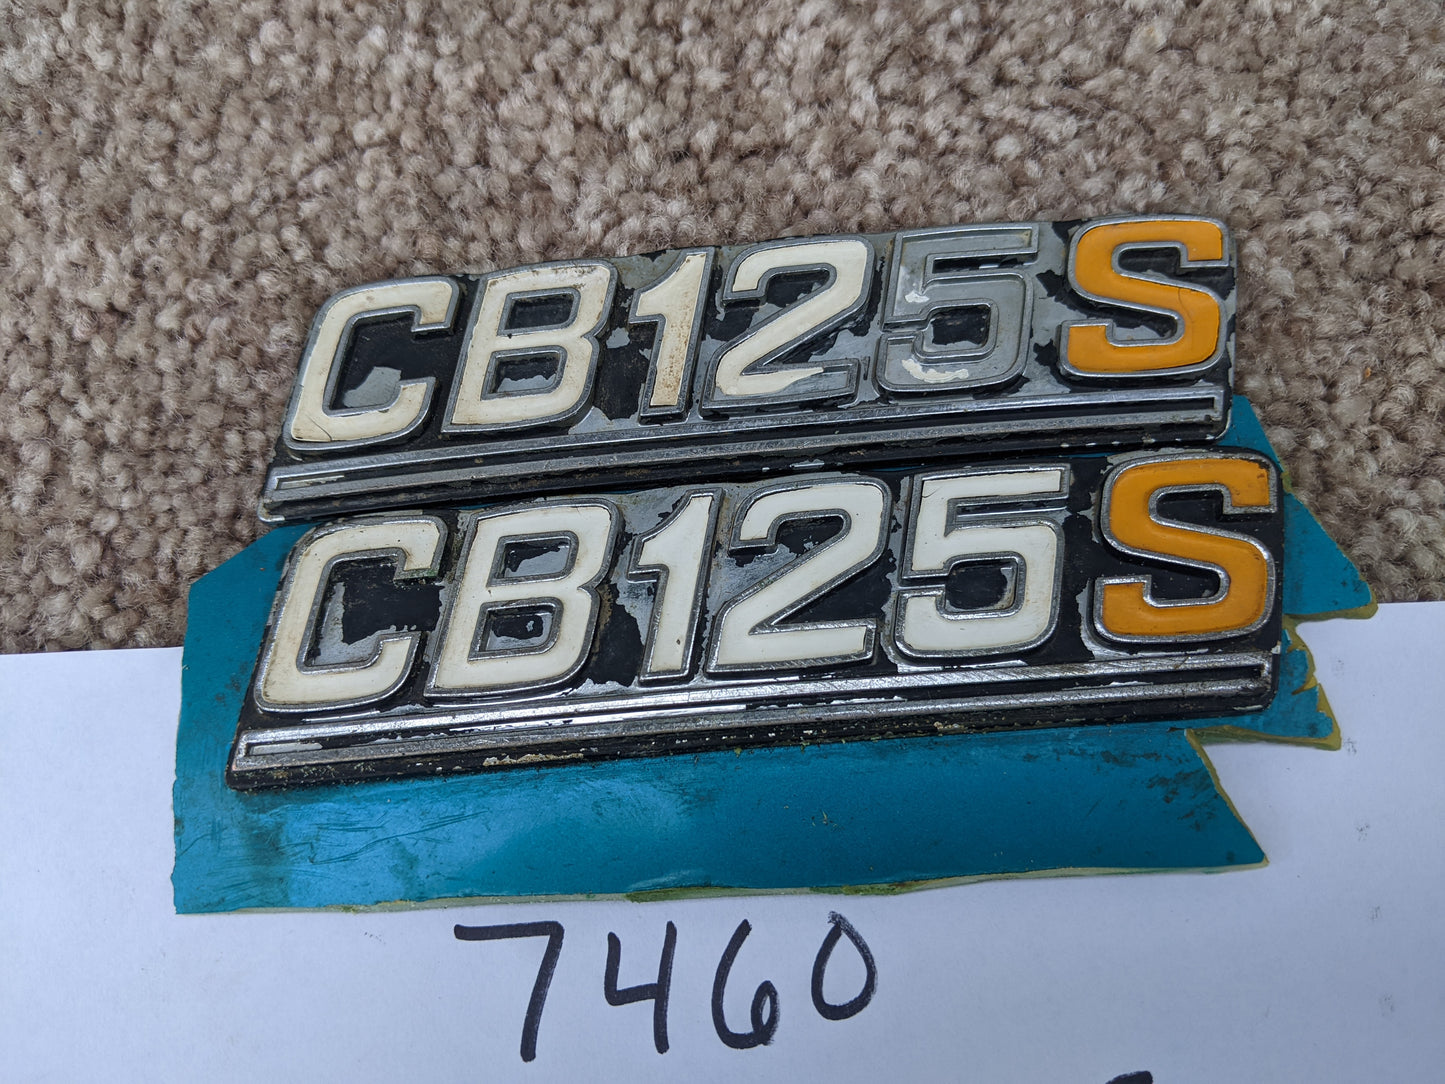 Honda CB125S 1975 badge pair sku 7460